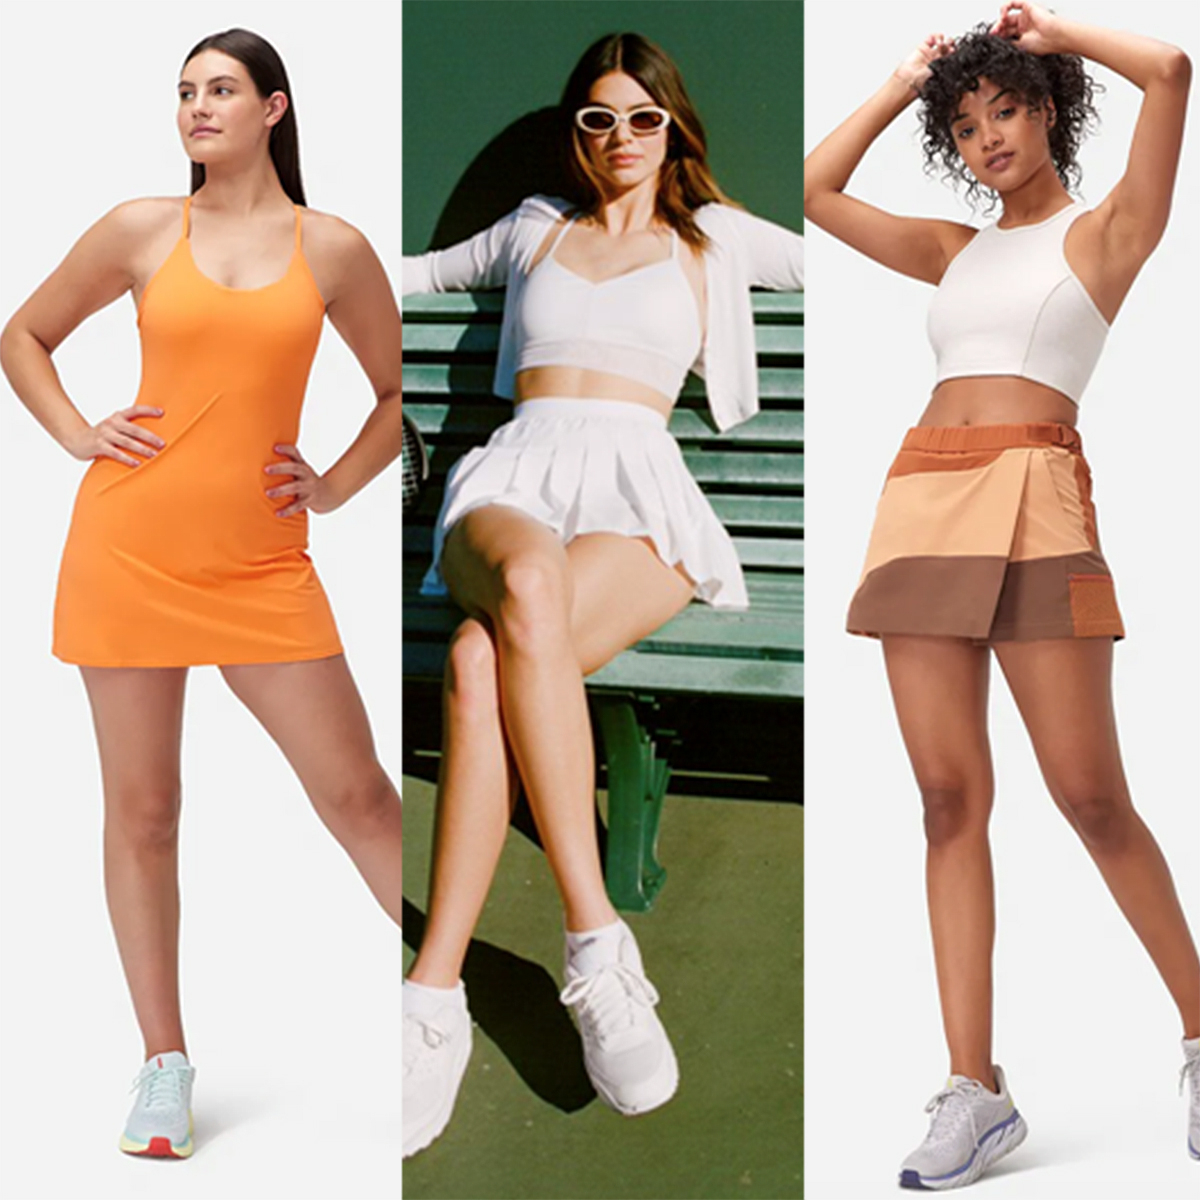  Women's Athletic Skirts - Women's Athletic Skirts